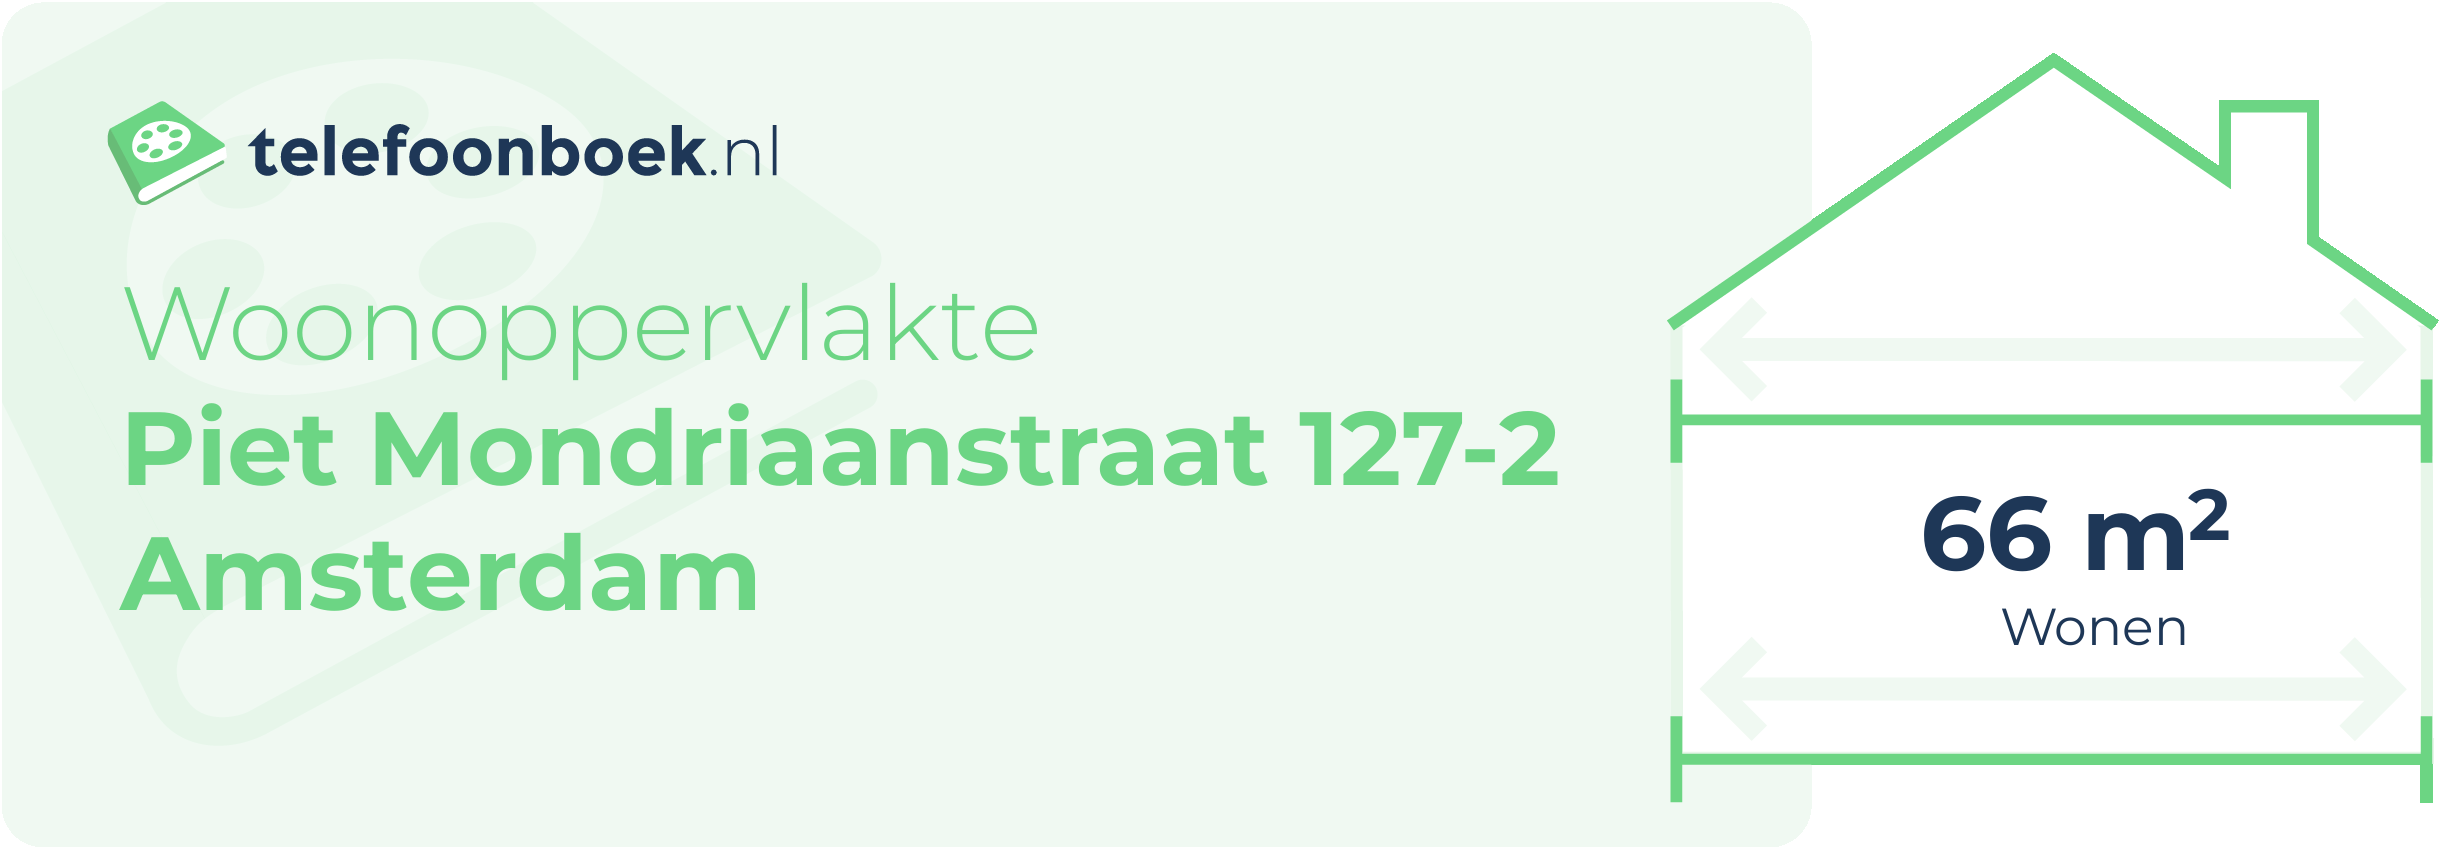 Woonoppervlakte Piet Mondriaanstraat 127-2 Amsterdam